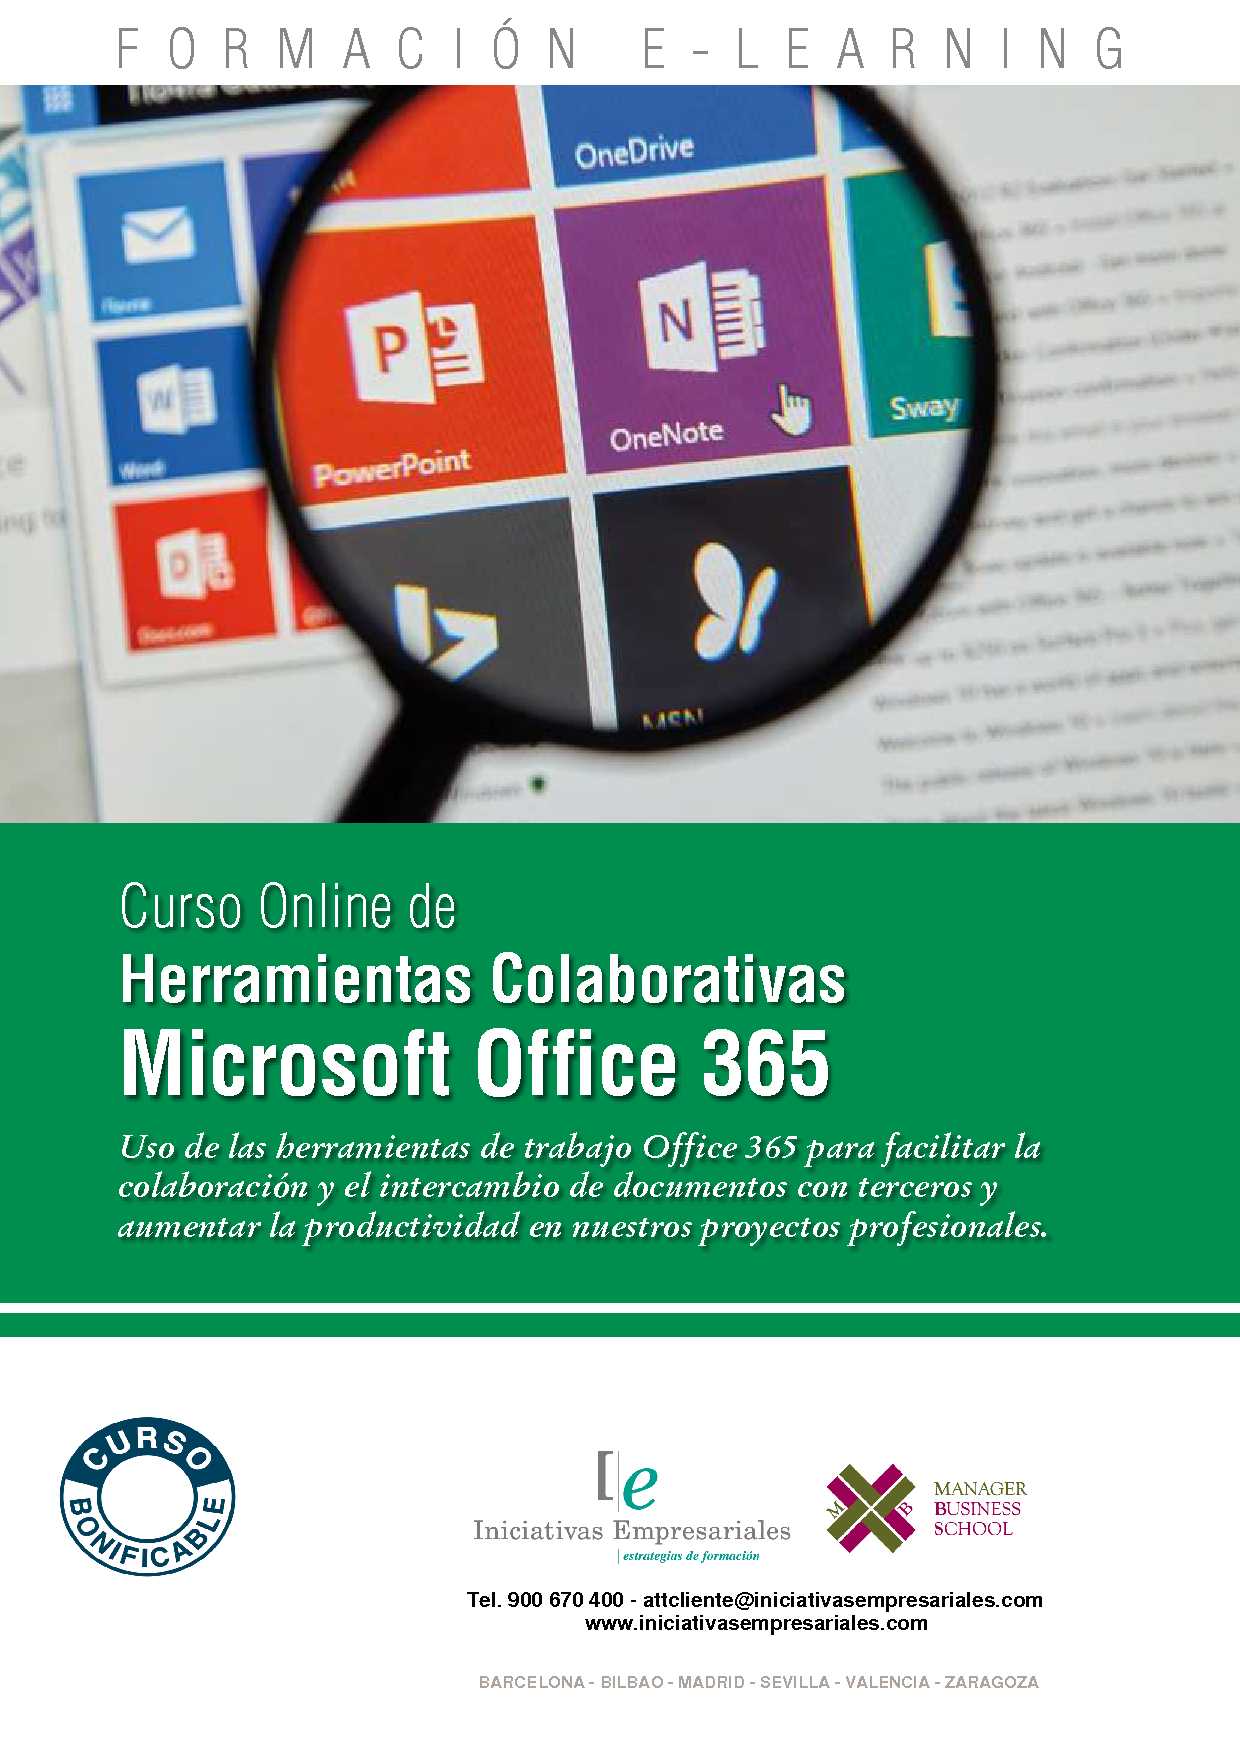 Enciclopedia Roca importar Curso Herramientas Colaborativas Microsoft Office 365